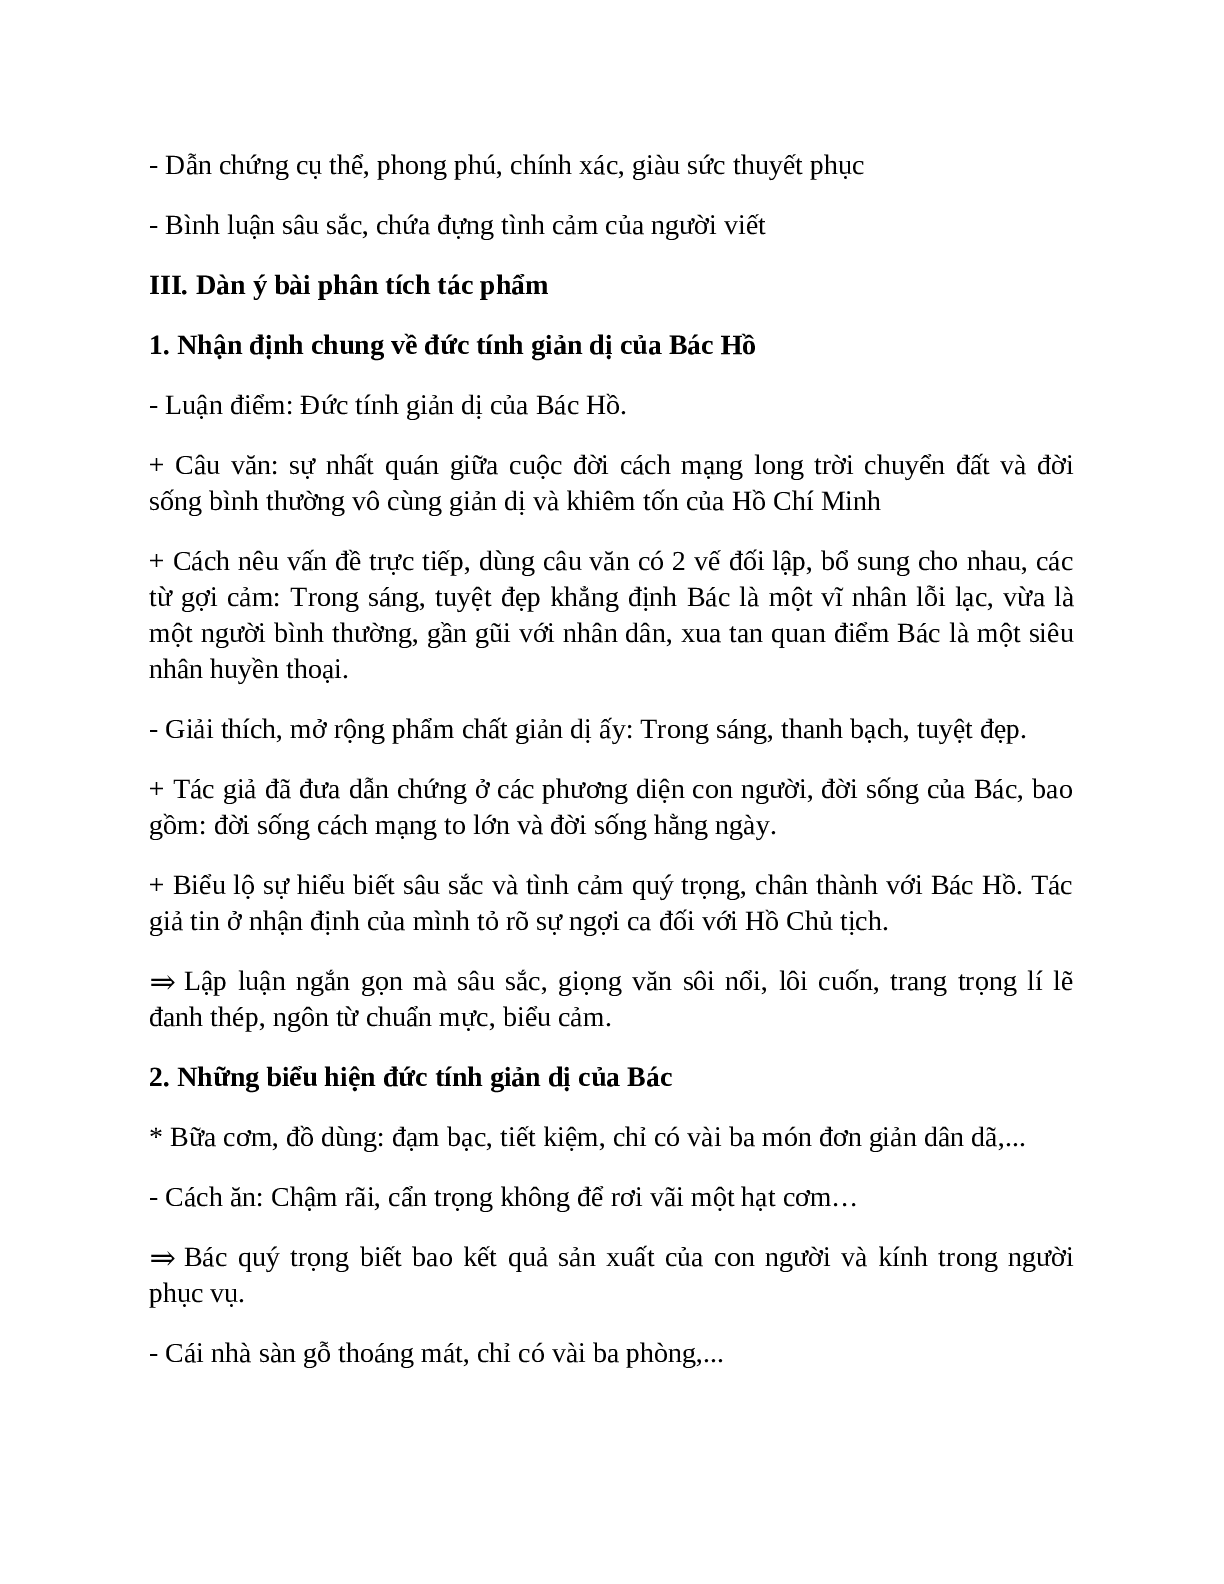 Sơ đồ tư duy bài Đức tính giản dị của Bác Hồ dễ nhớ, ngắn nhất - Ngữ văn lớp 7 (trang 3)